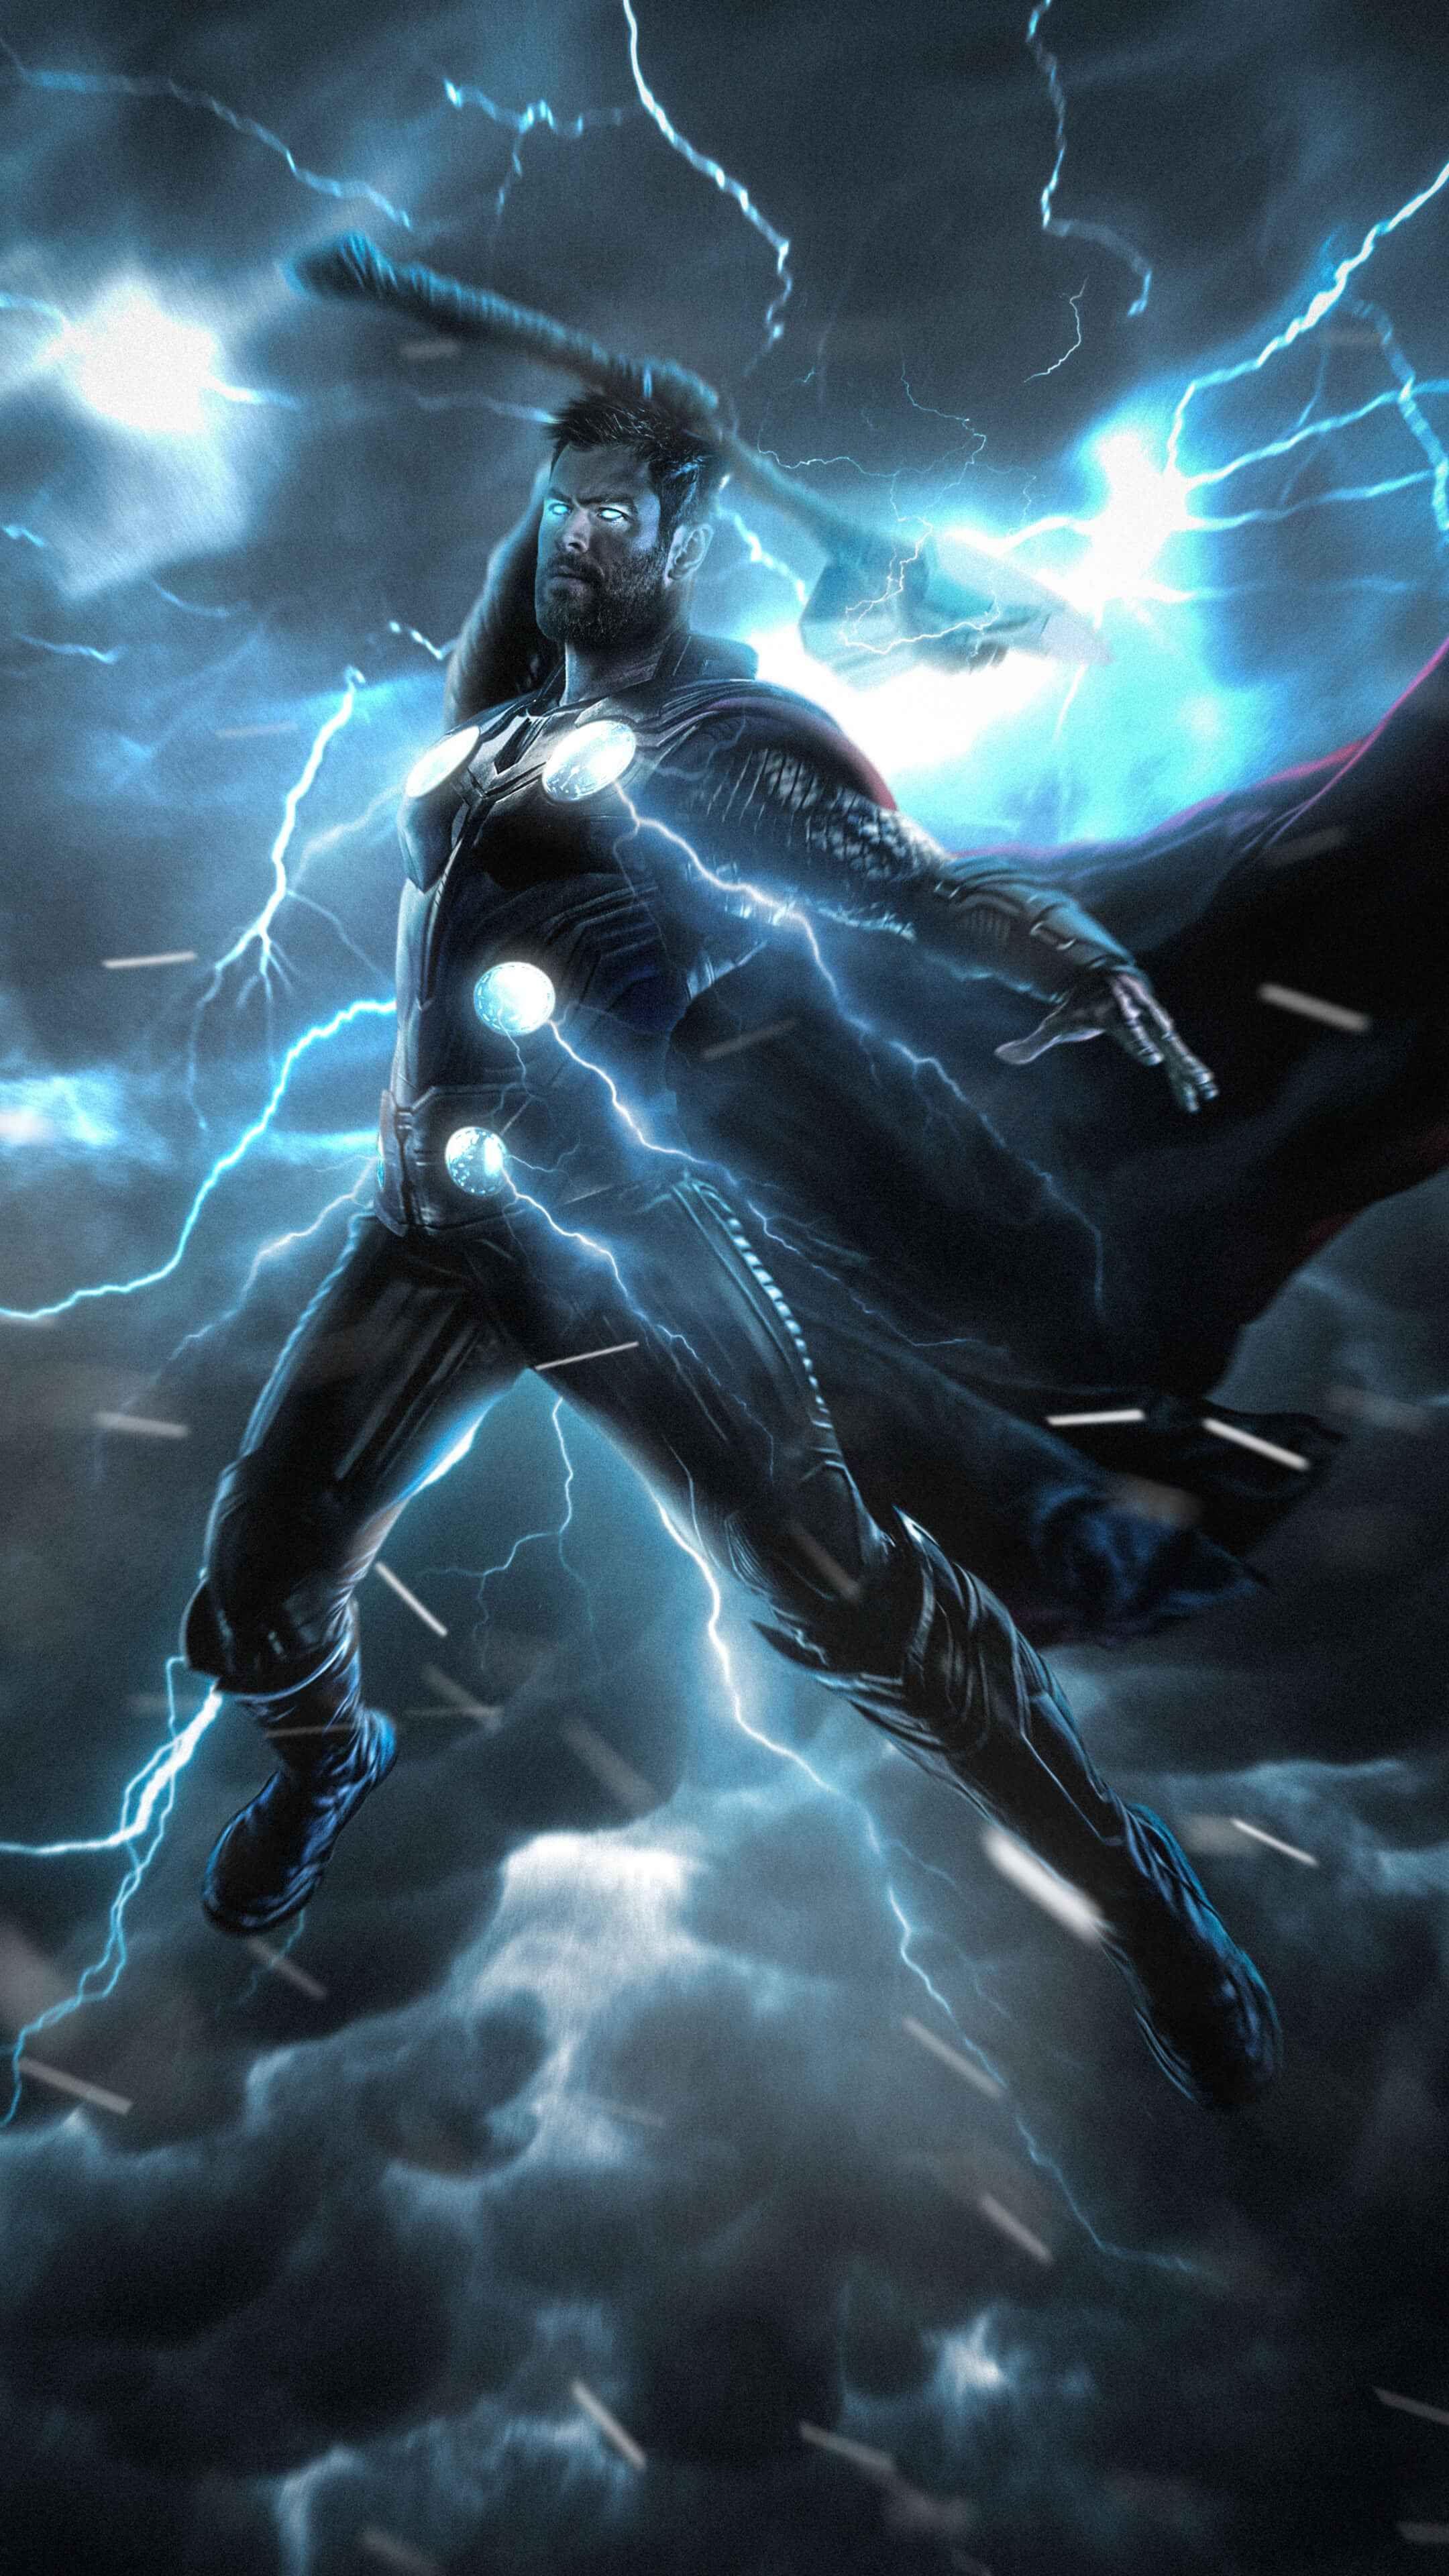 Avengers Endgame Thor Stormbreaker iPhone Wallpaper. Thor